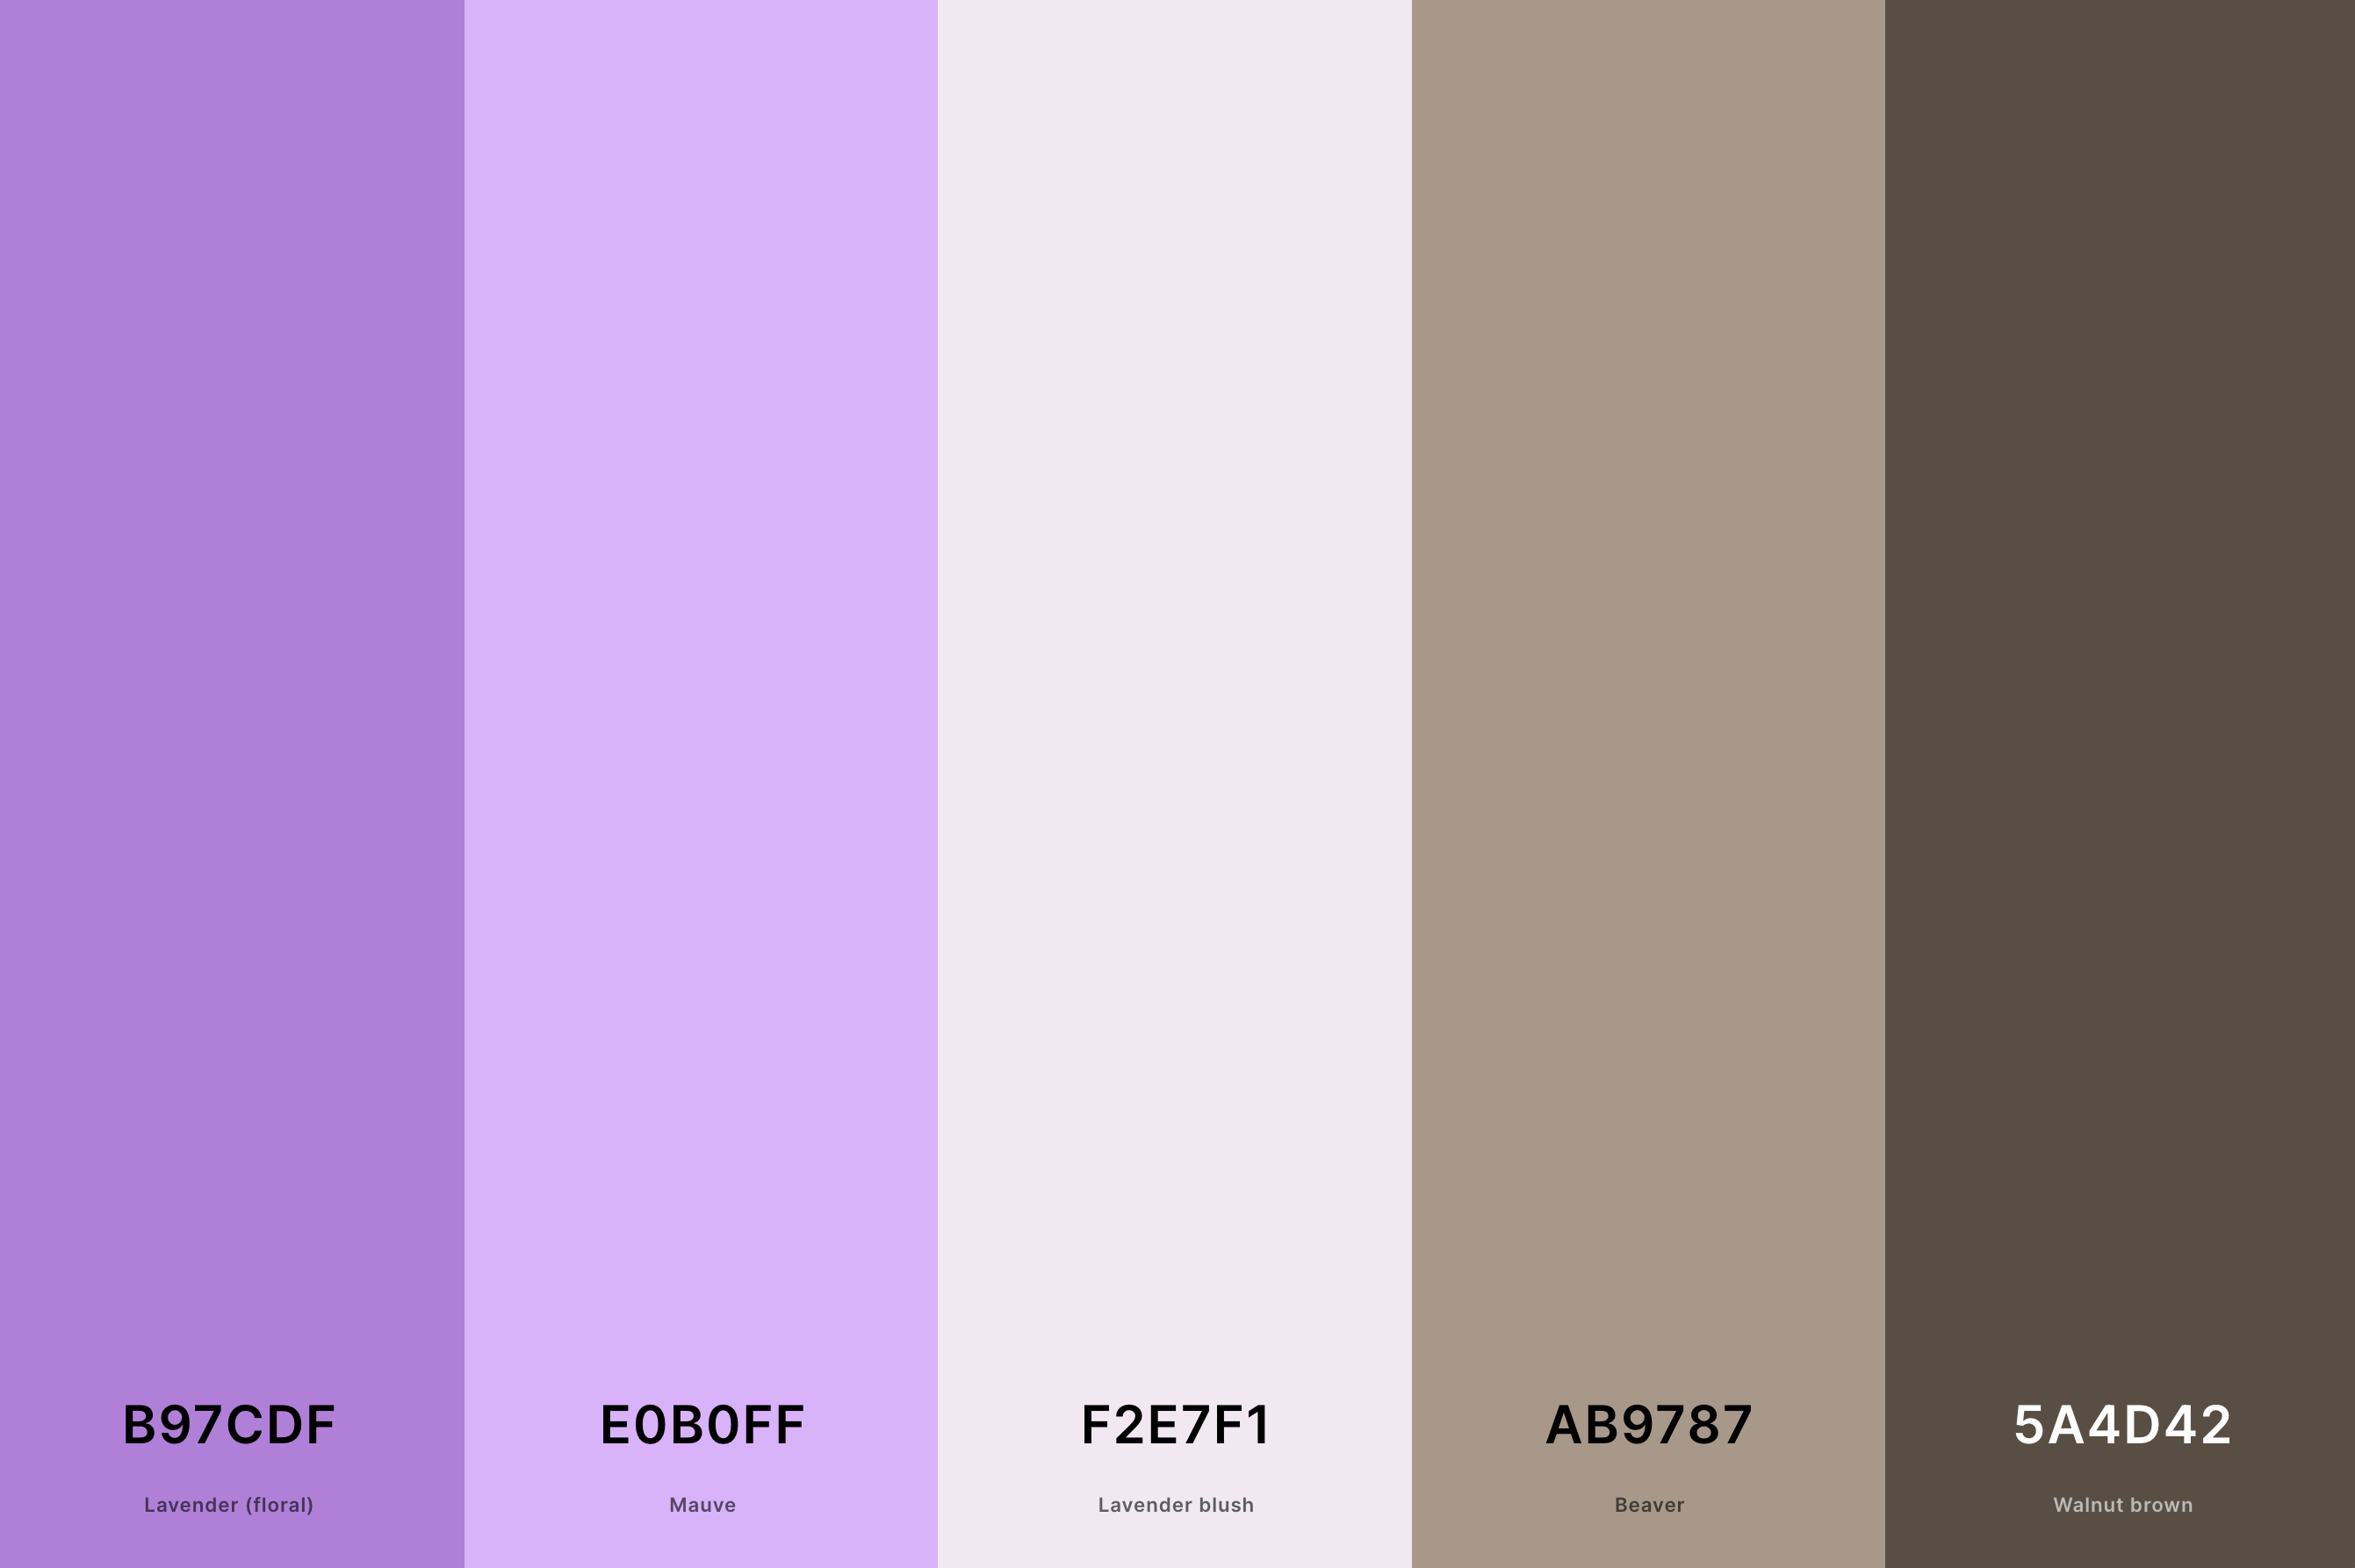 10. Mauve And Taupe Color Palette Color Palette with Lavender (Floral) (Hex #B97CDF) + Mauve (Hex #E0B0FF) + Lavender Blush (Hex #F2E7F1) + Beaver (Hex #AB9787) + Walnut Brown (Hex #5A4D42) Color Palette with Hex Codes